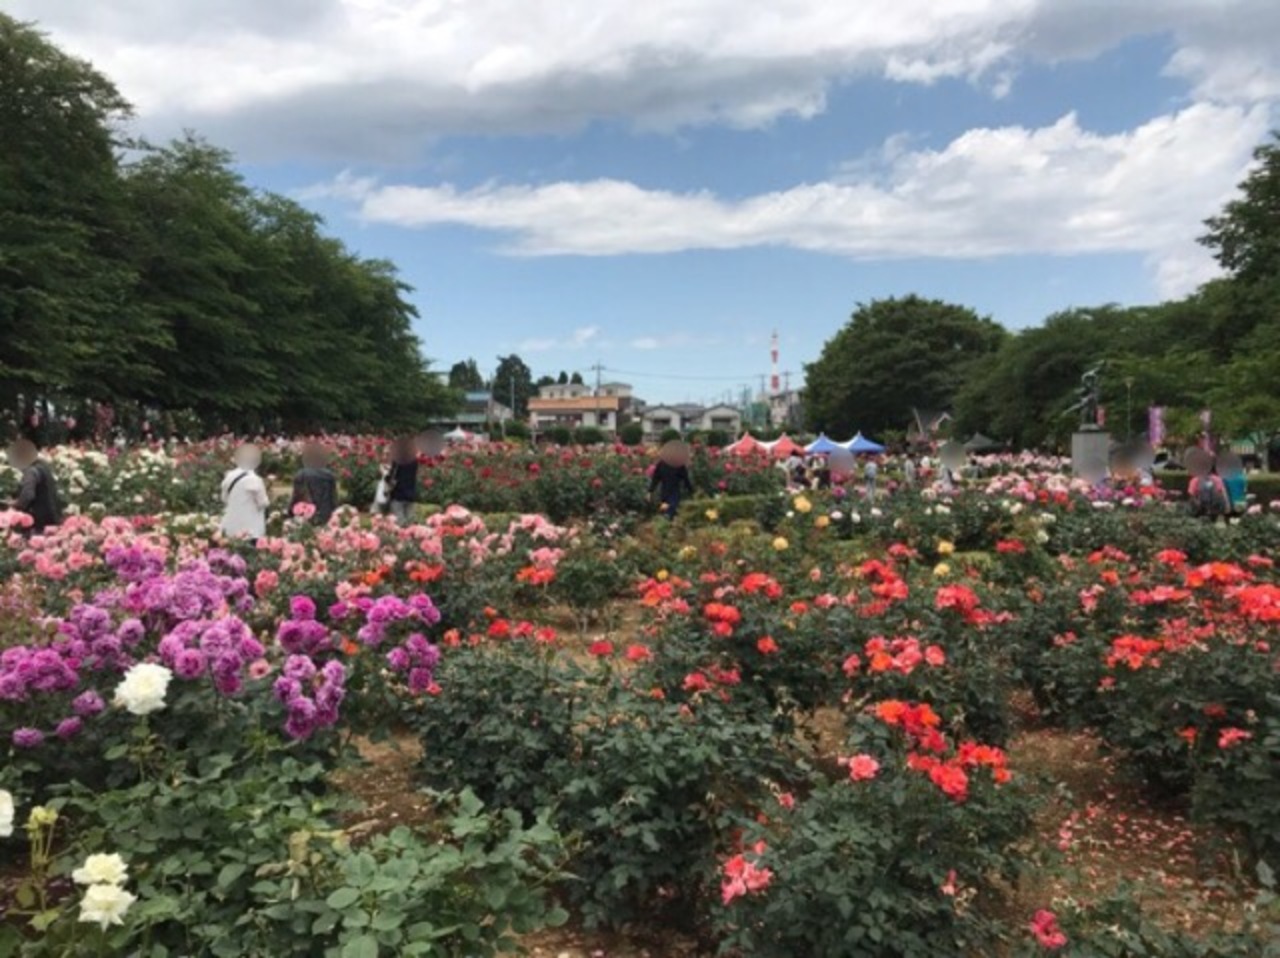 ばらまつり18 与野公園 見事なバラ園の春のお祭り さいたま新都心 埼玉県 の旅行記 ブログ By としさん フォートラベル